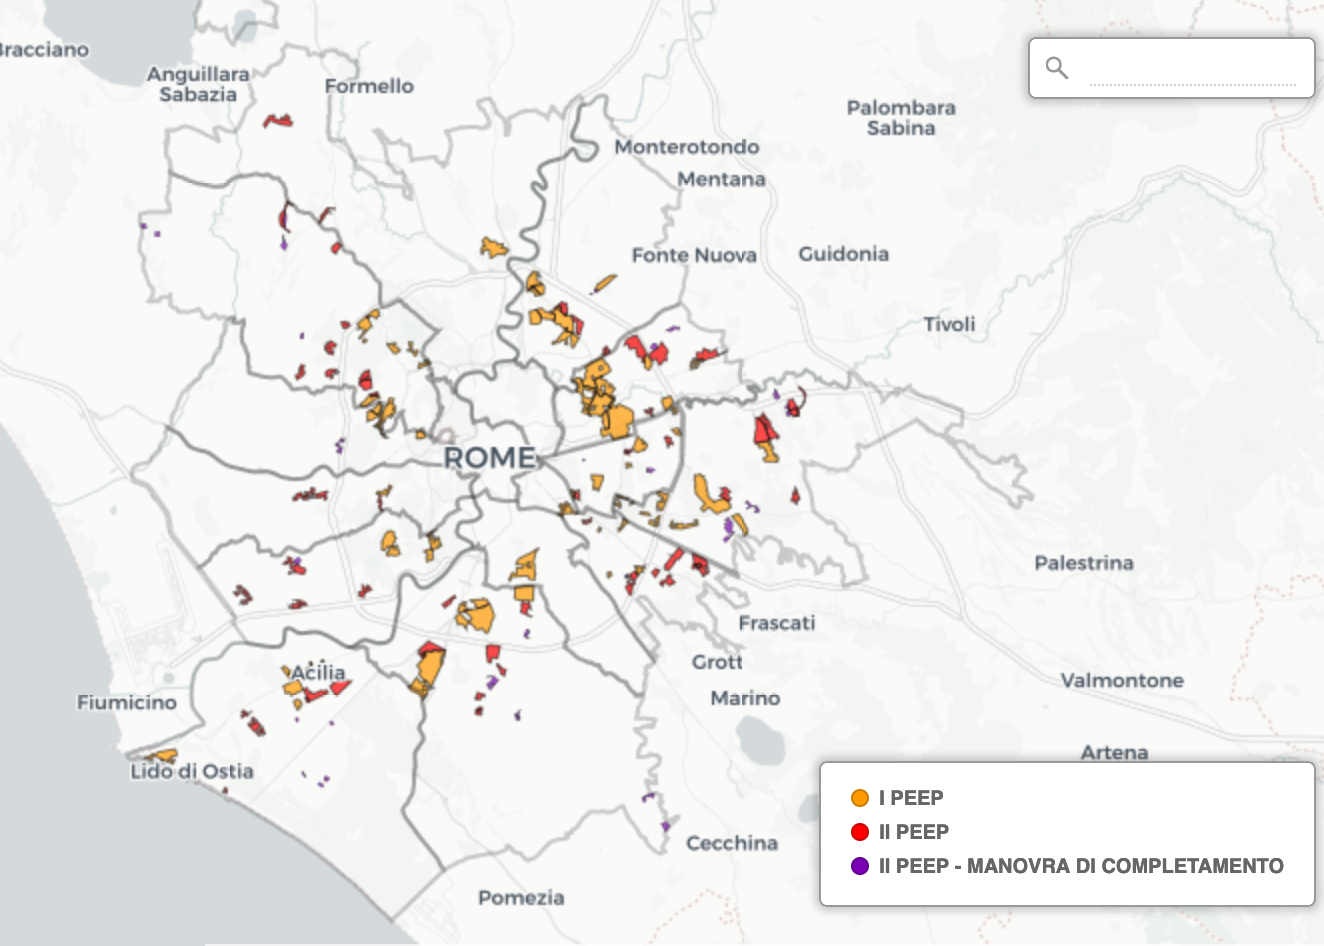 mappa piani di zona da sito urbanistica comune roma